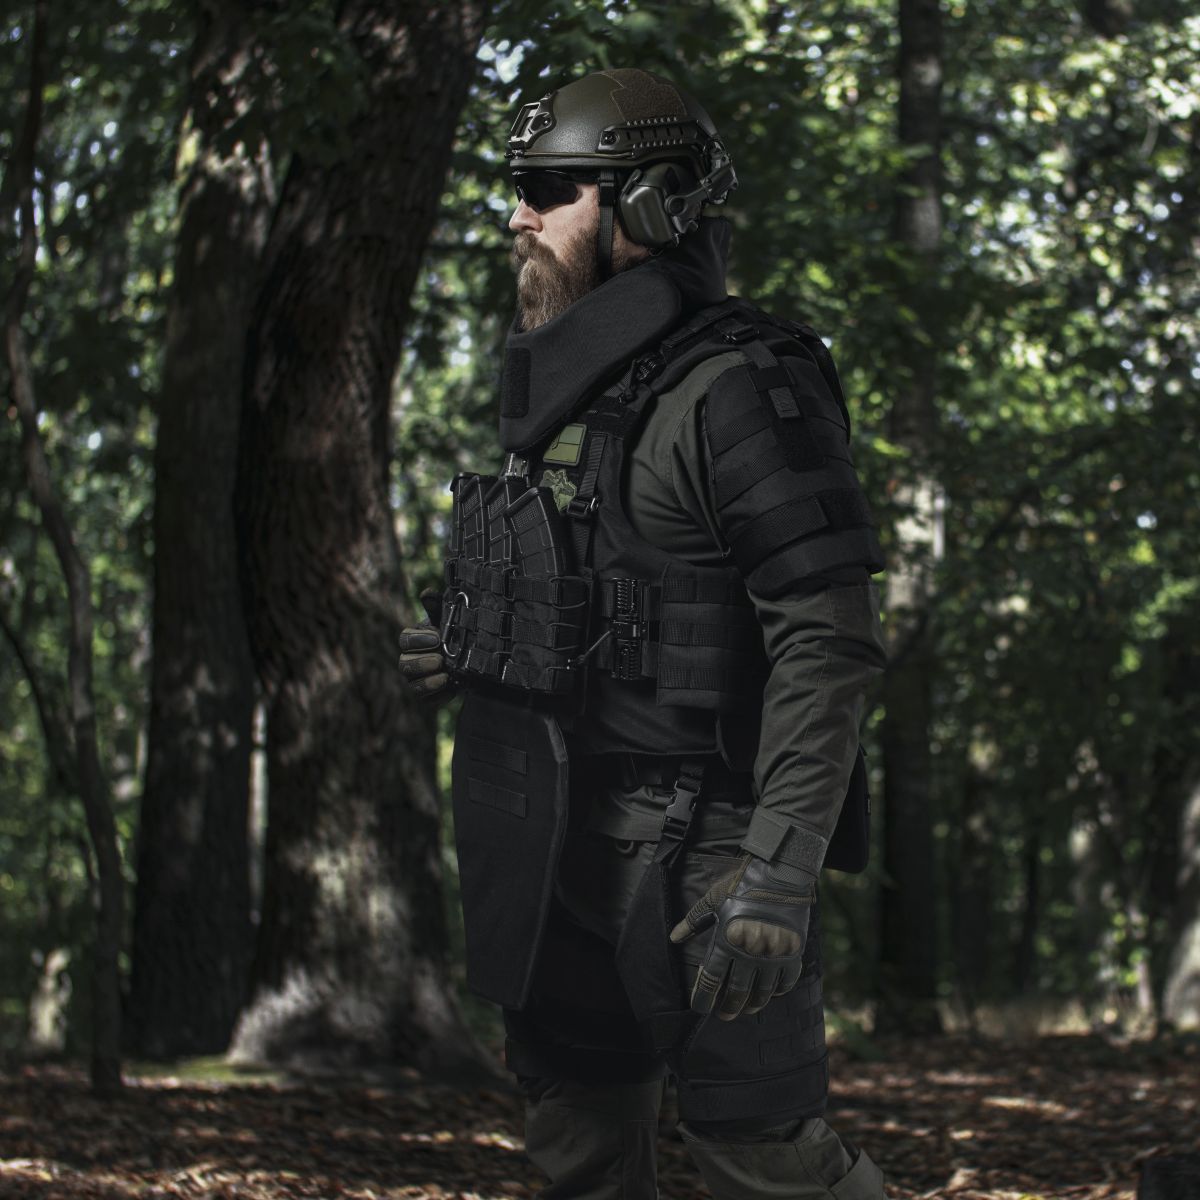 Бронекостюм A.T.A.S. (Advanced Tactical Armor Suit) Level I. Класс защиты – 1. Черный. L/XL 6